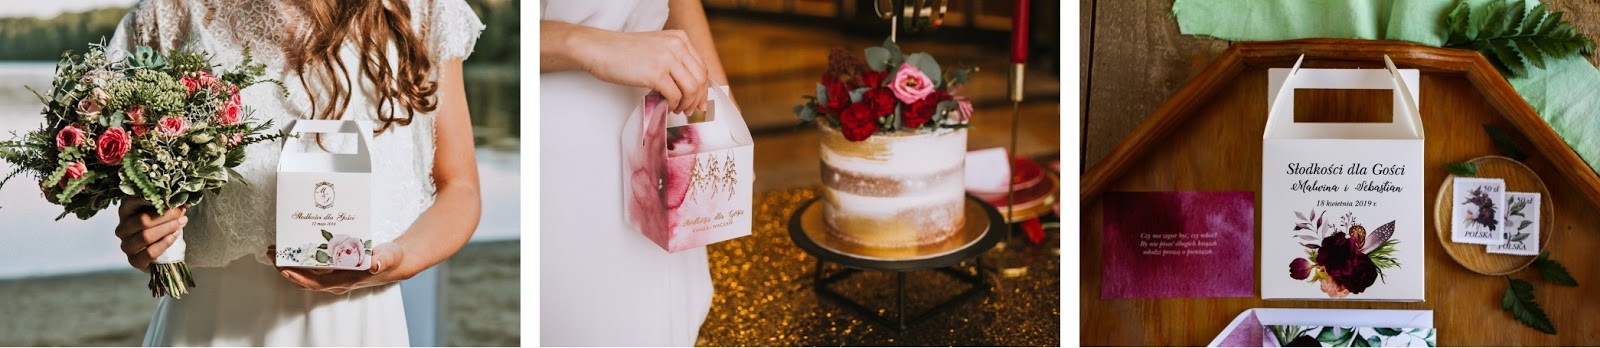 Wesele jak z bajki - jak zorganizować idealne wesele. O czym trzeba pamiętać przy organizacji wesela, dodatki na ślub. Jak ustalić menu weselne, pudełka ozdobne na ciasta dla gości - pomysły, inspiracje i porady.